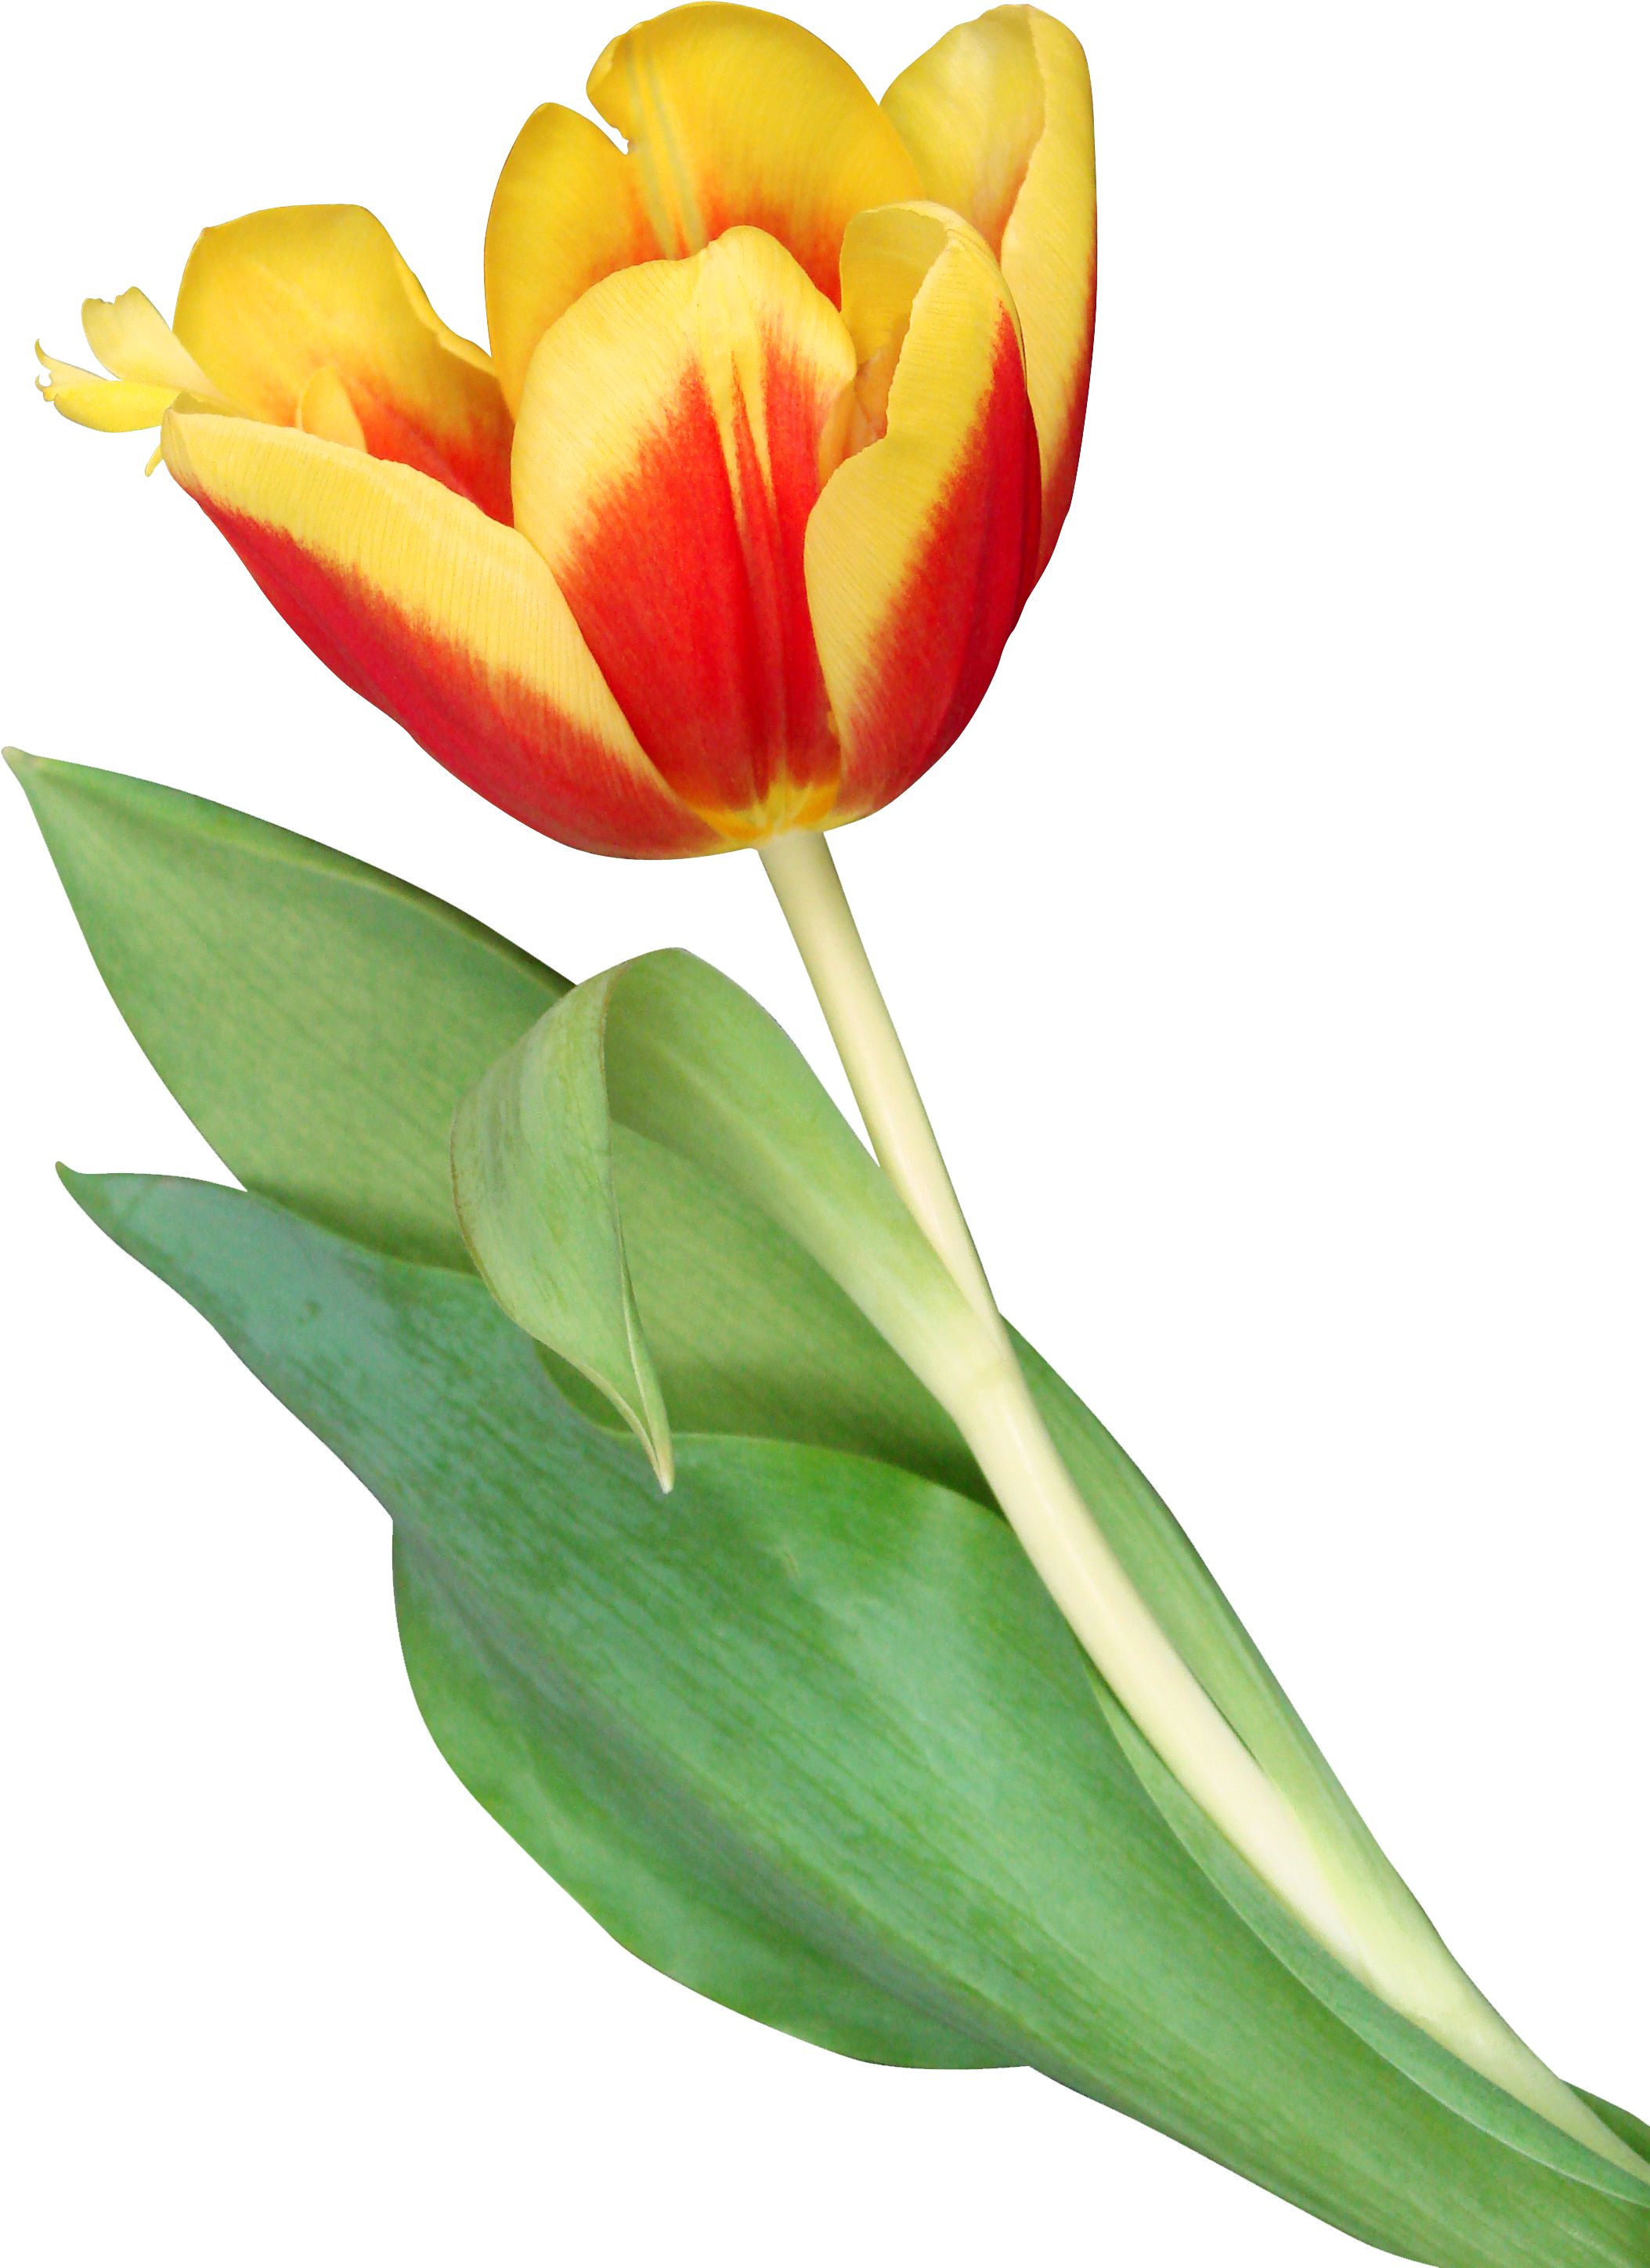 Tulip (2241x3025)